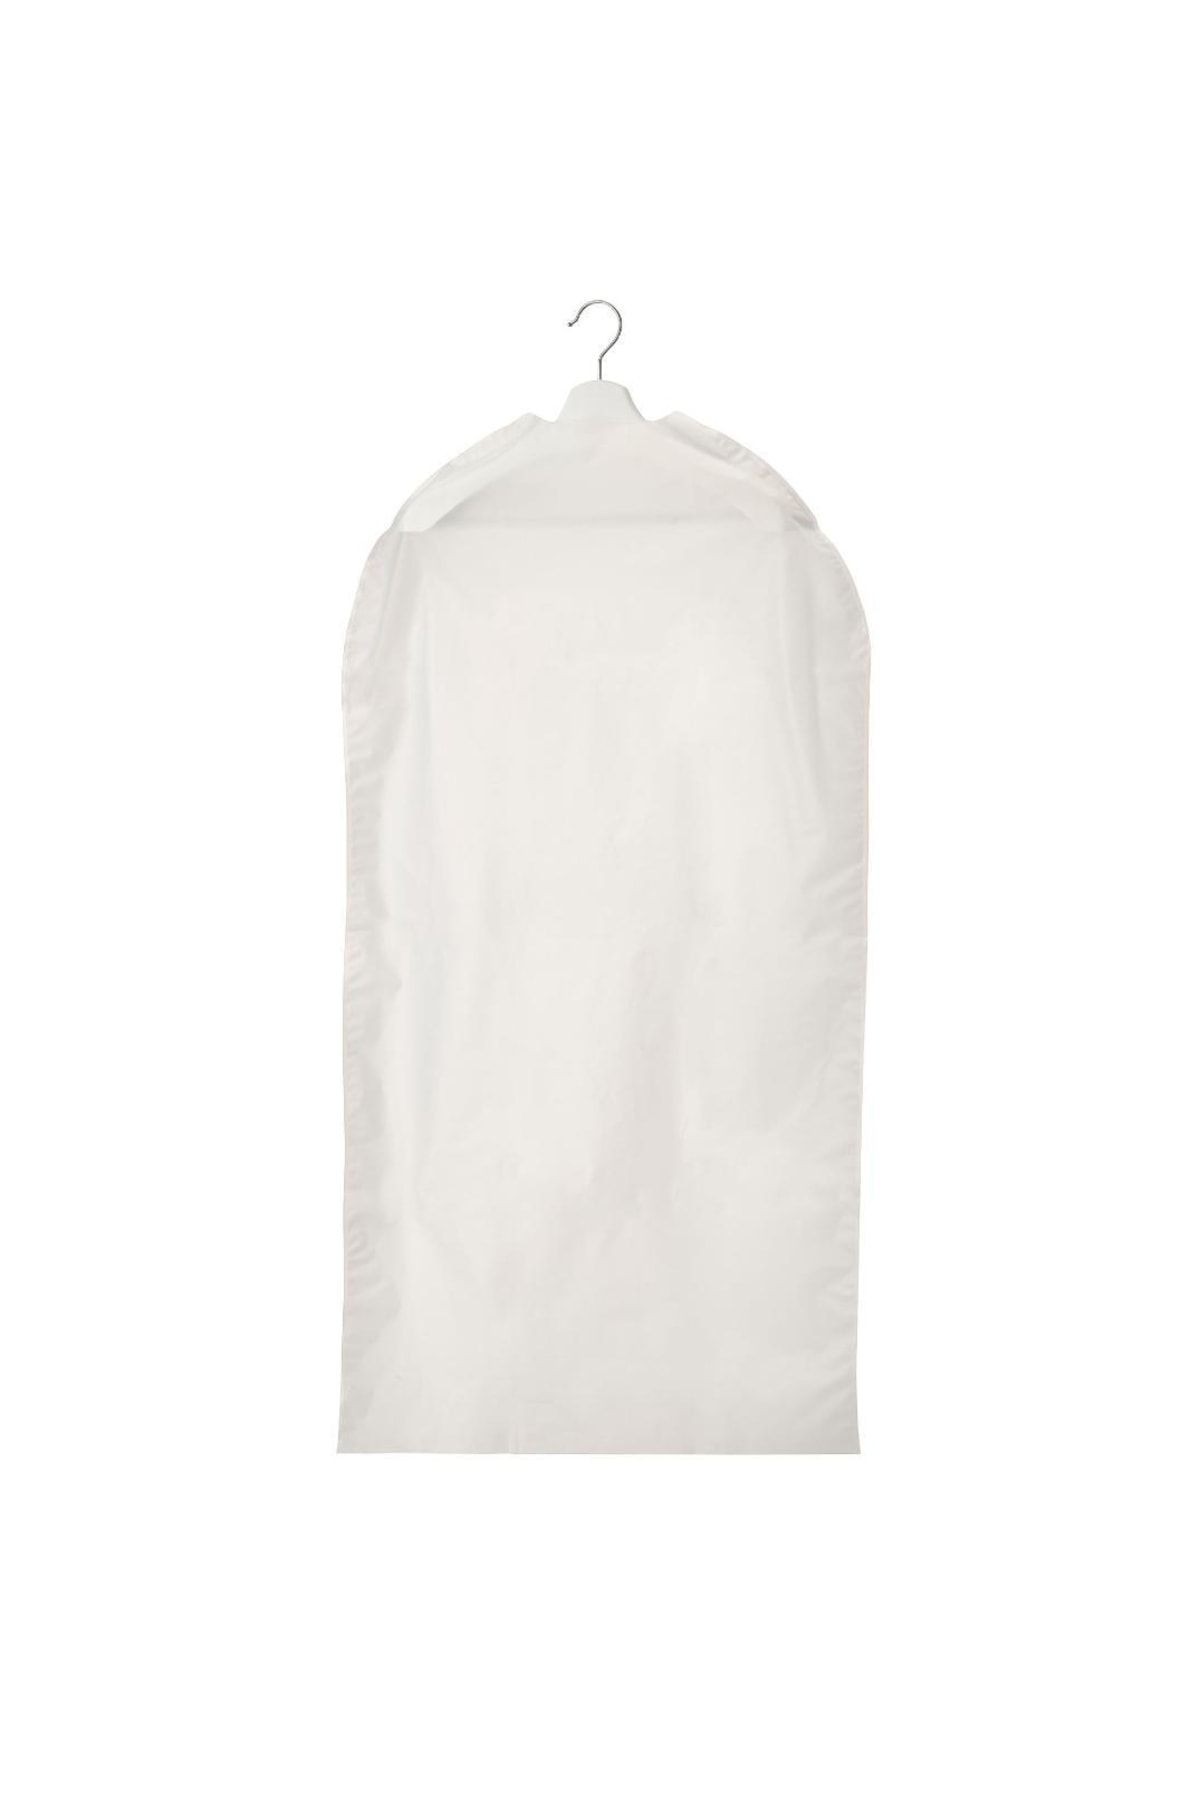 IKEA Renshacka 105x60 Cm Beyaz Şeffaf Elbise Giysi Kılıfı Koruyucu